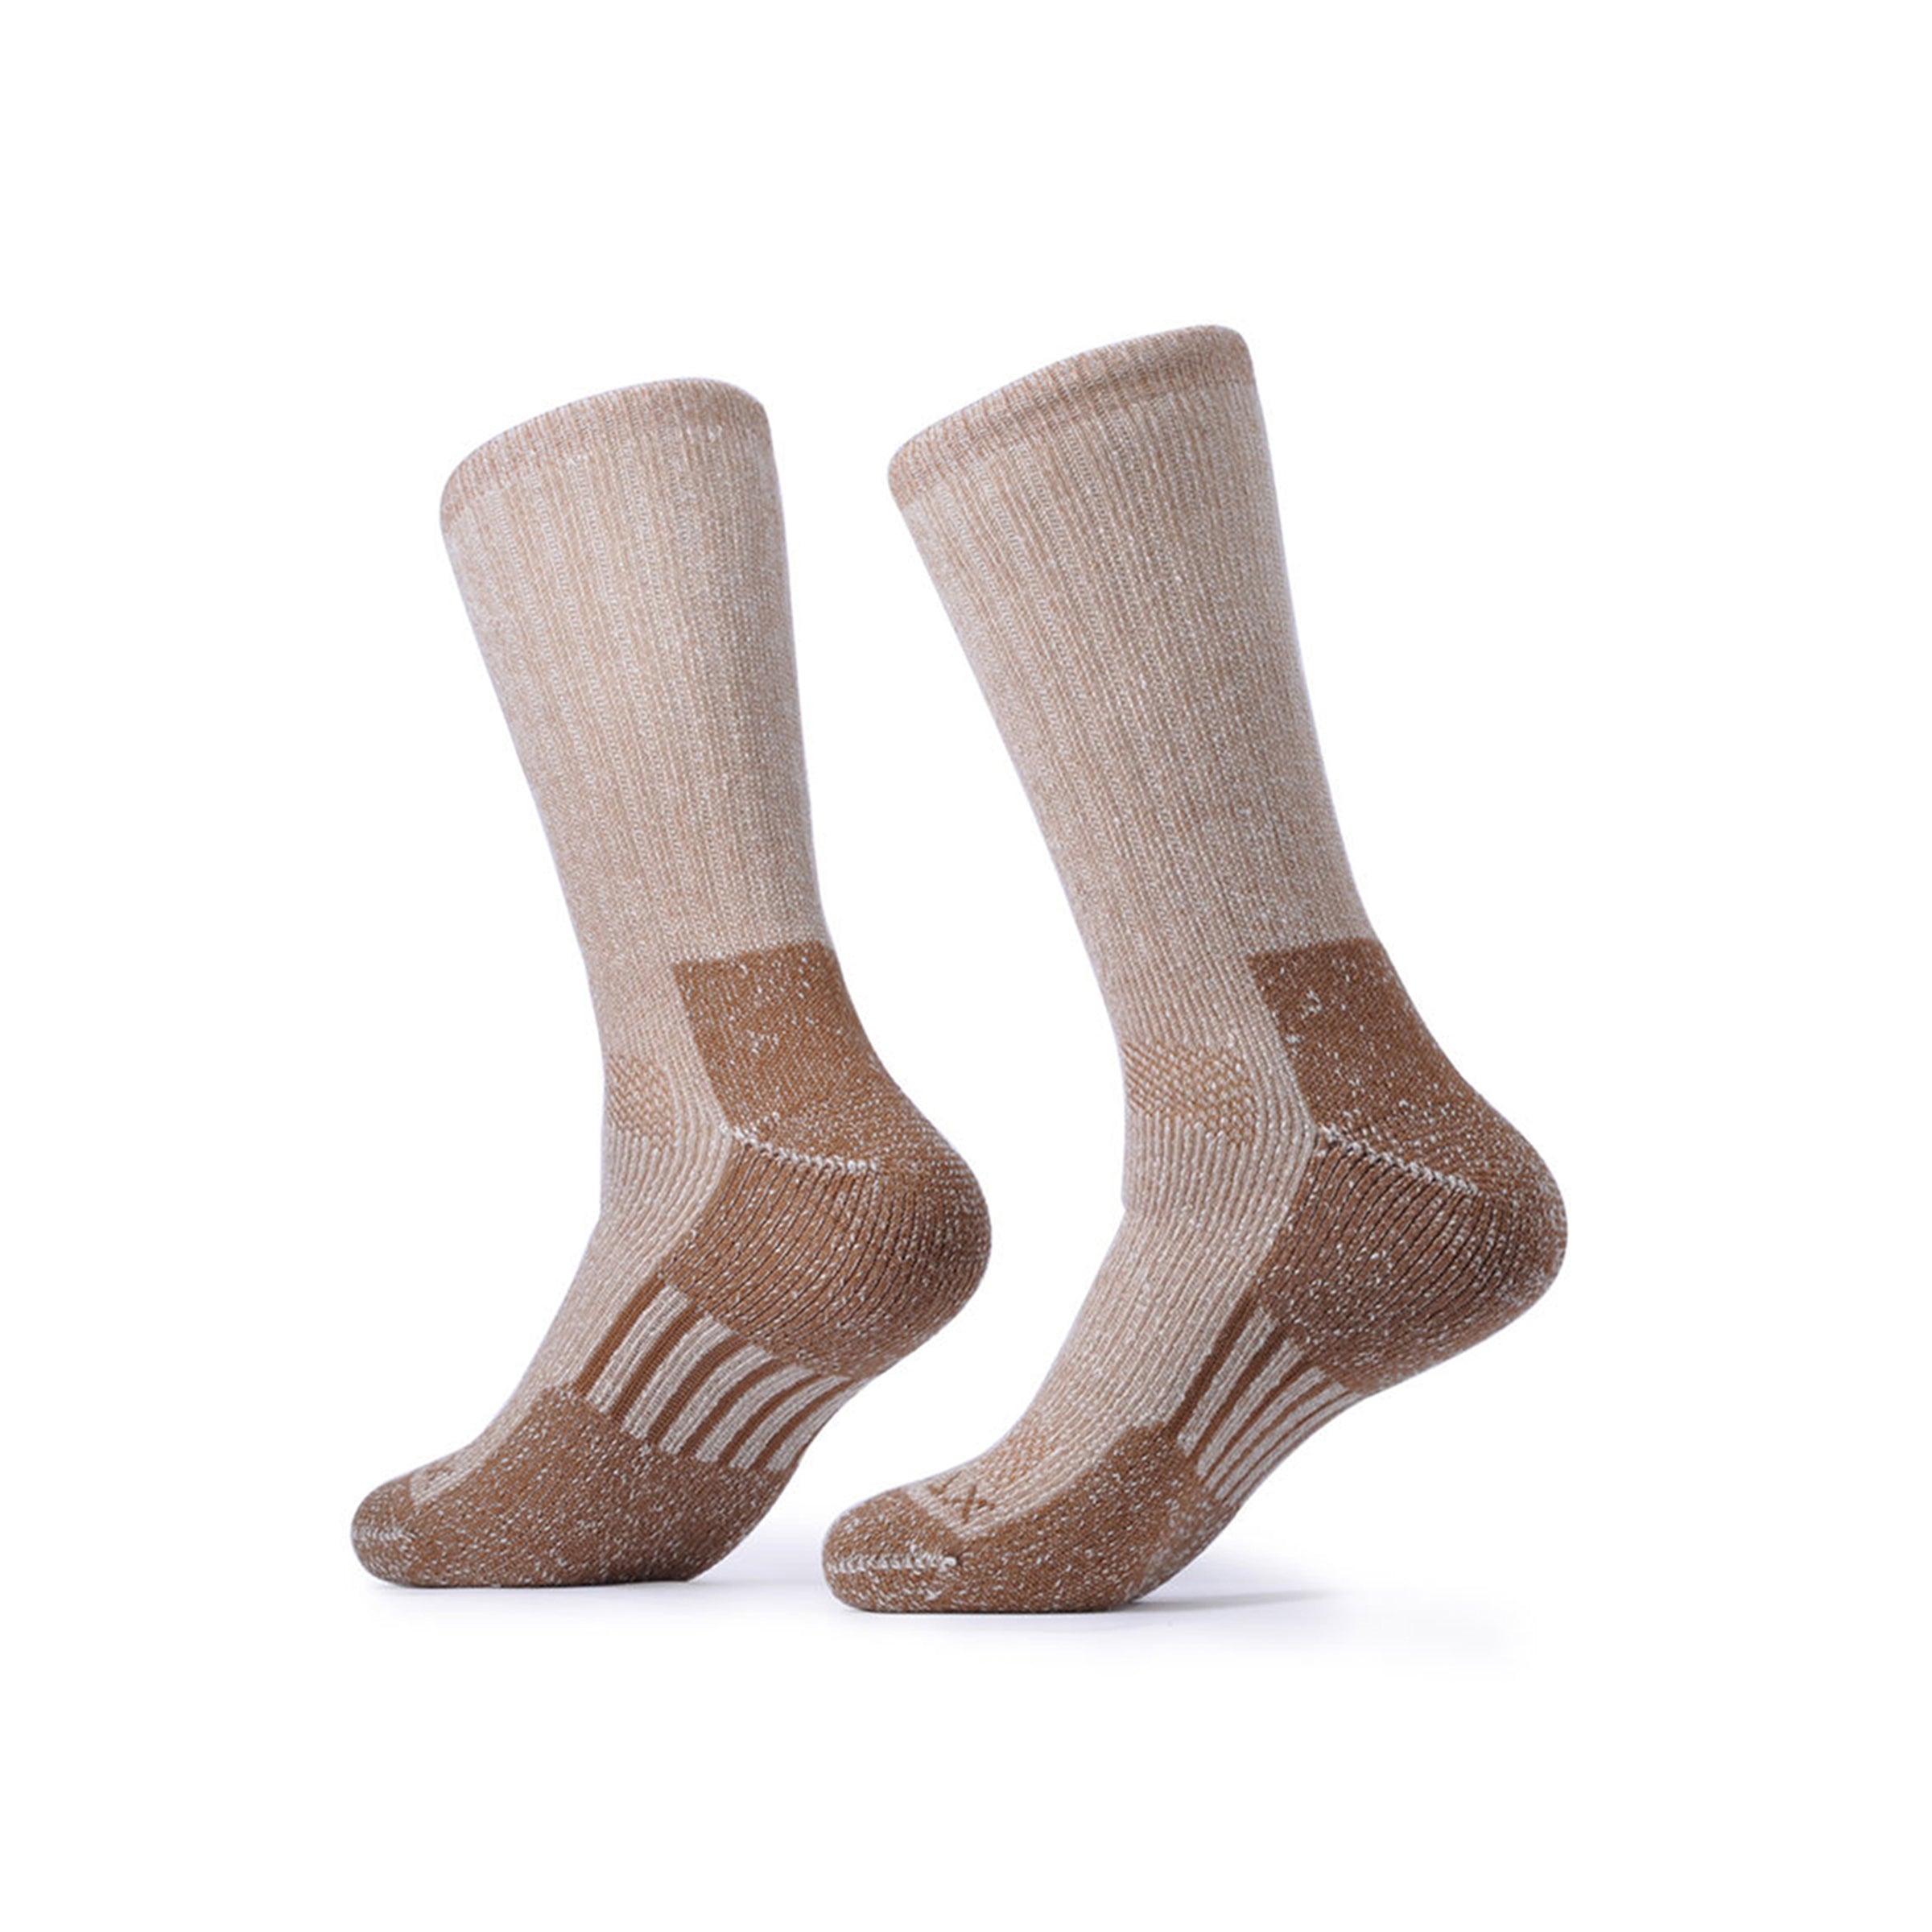 SOLAX 2 pairs Merino Wool Outdoor Socks